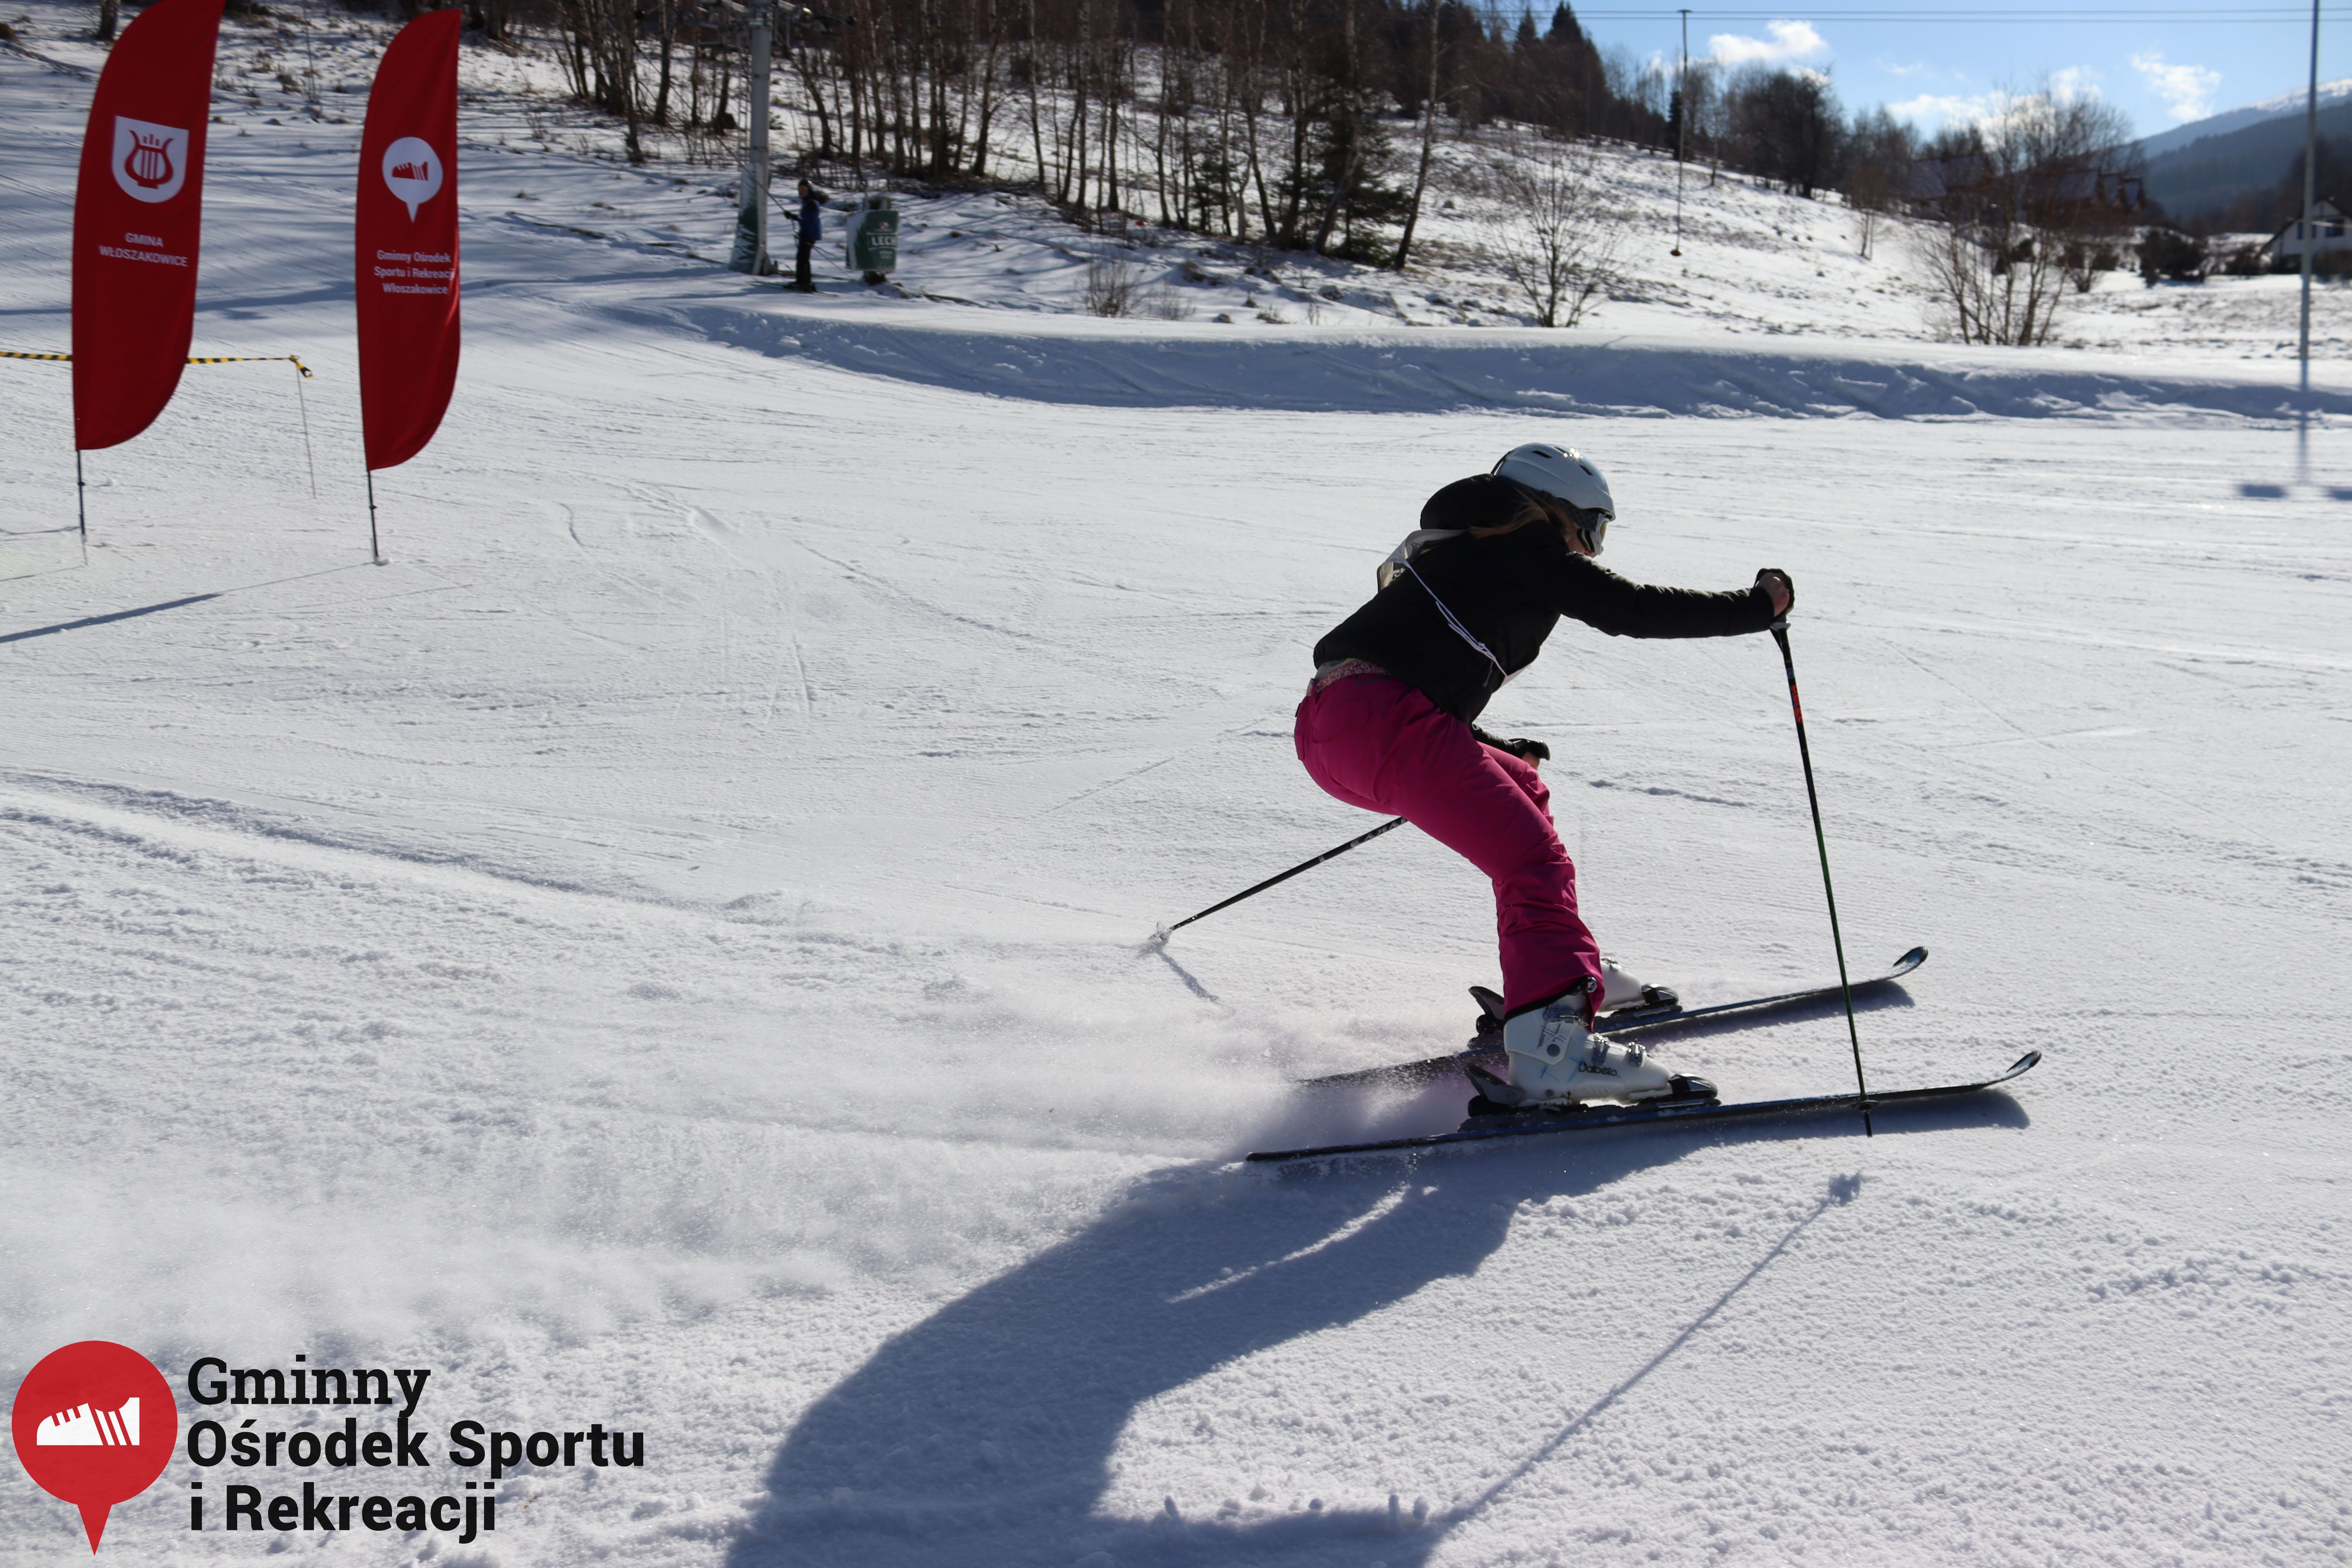 2022.02.12 - 18. Mistrzostwa Gminy Woszakowice w narciarstwie089.jpg - 2,38 MB